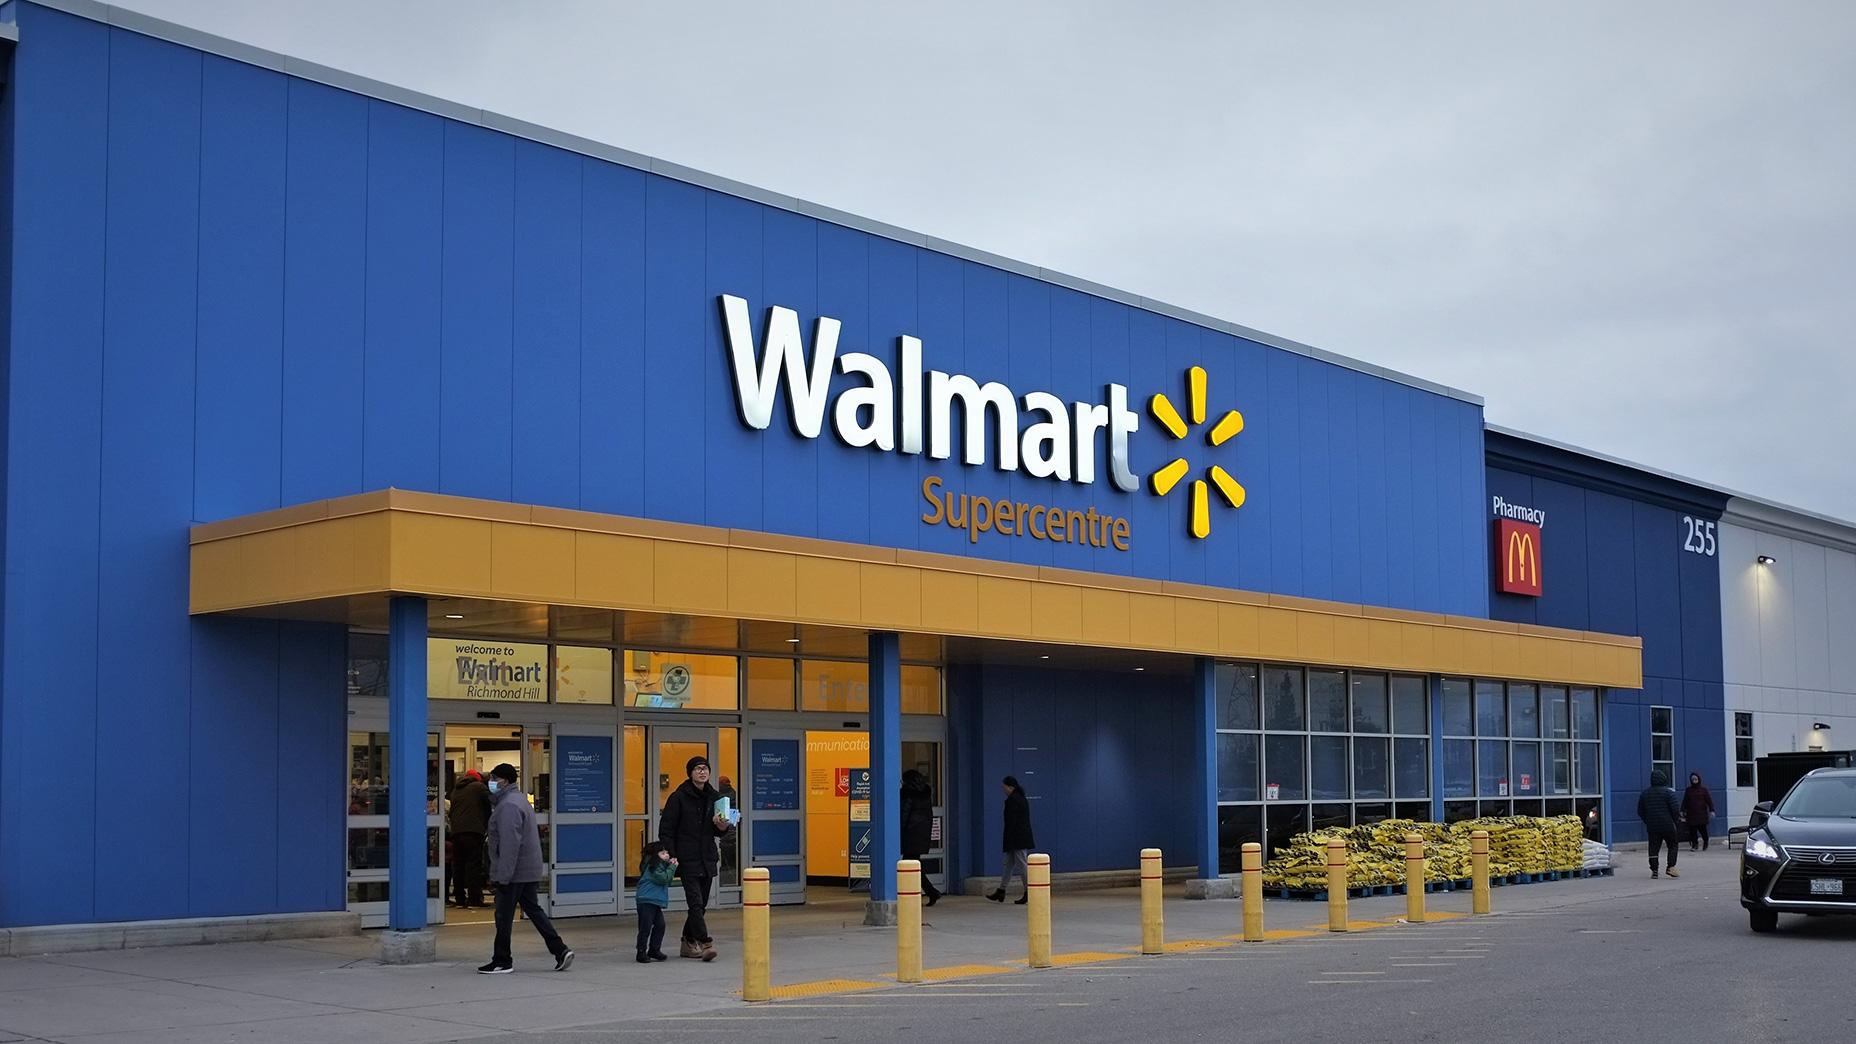 Las acciones de Walmart regresan a máximos históricos: ¿se debería esperar un mayor crecimiento?